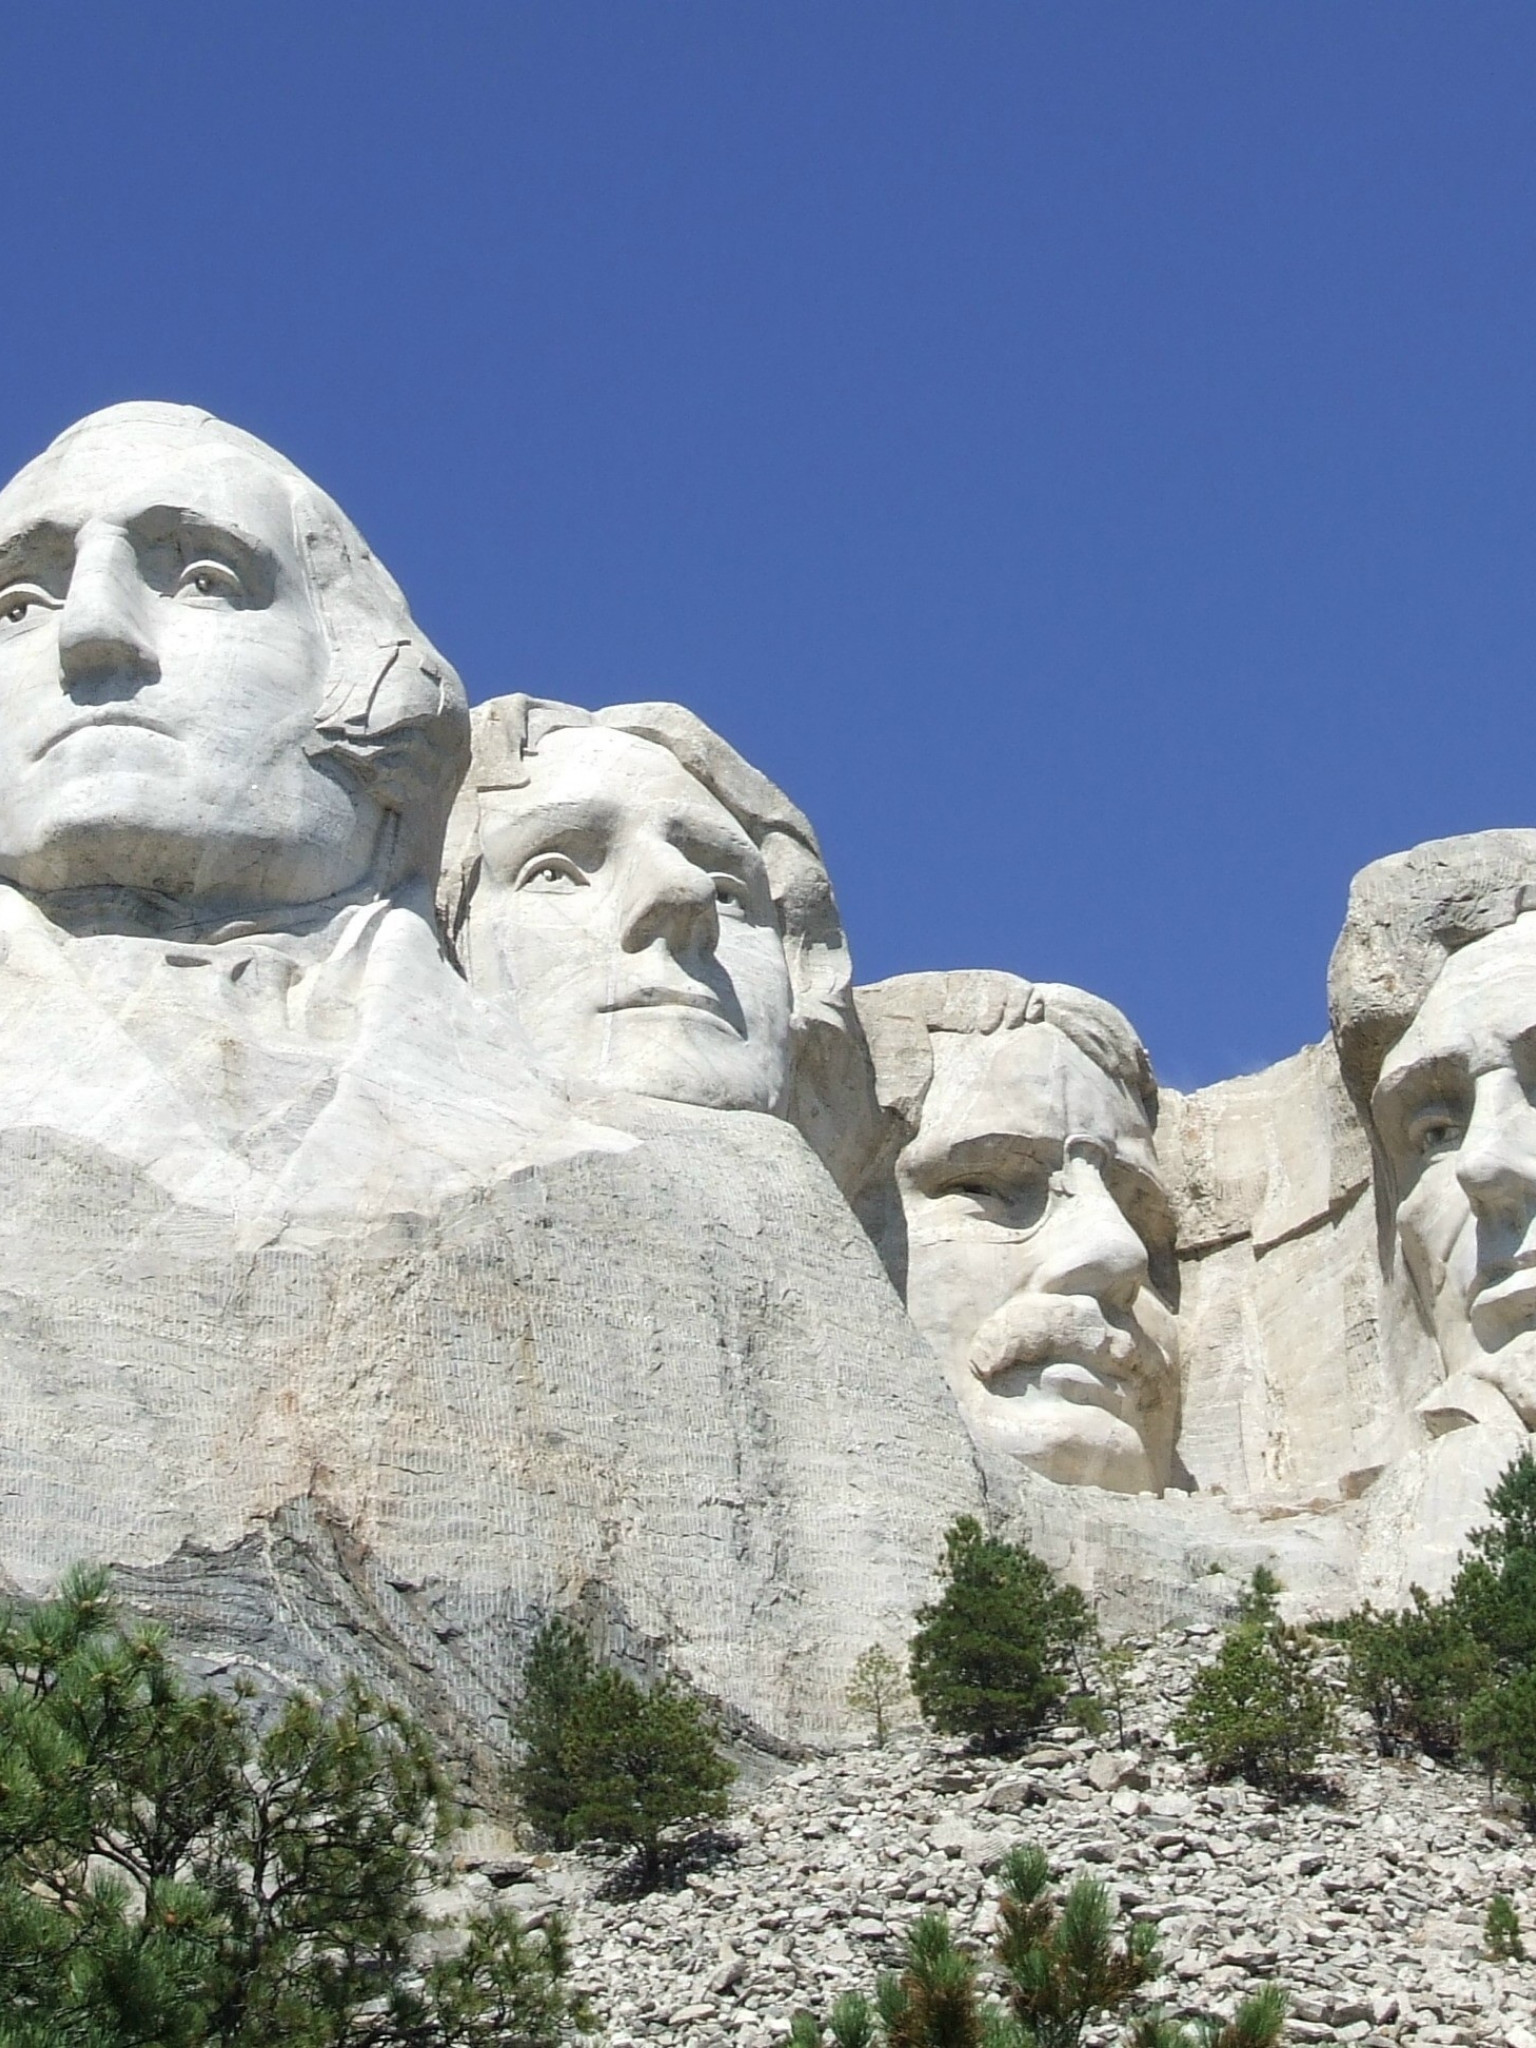 Pomnik Mount Rushmore wyżeźbiony w skałach